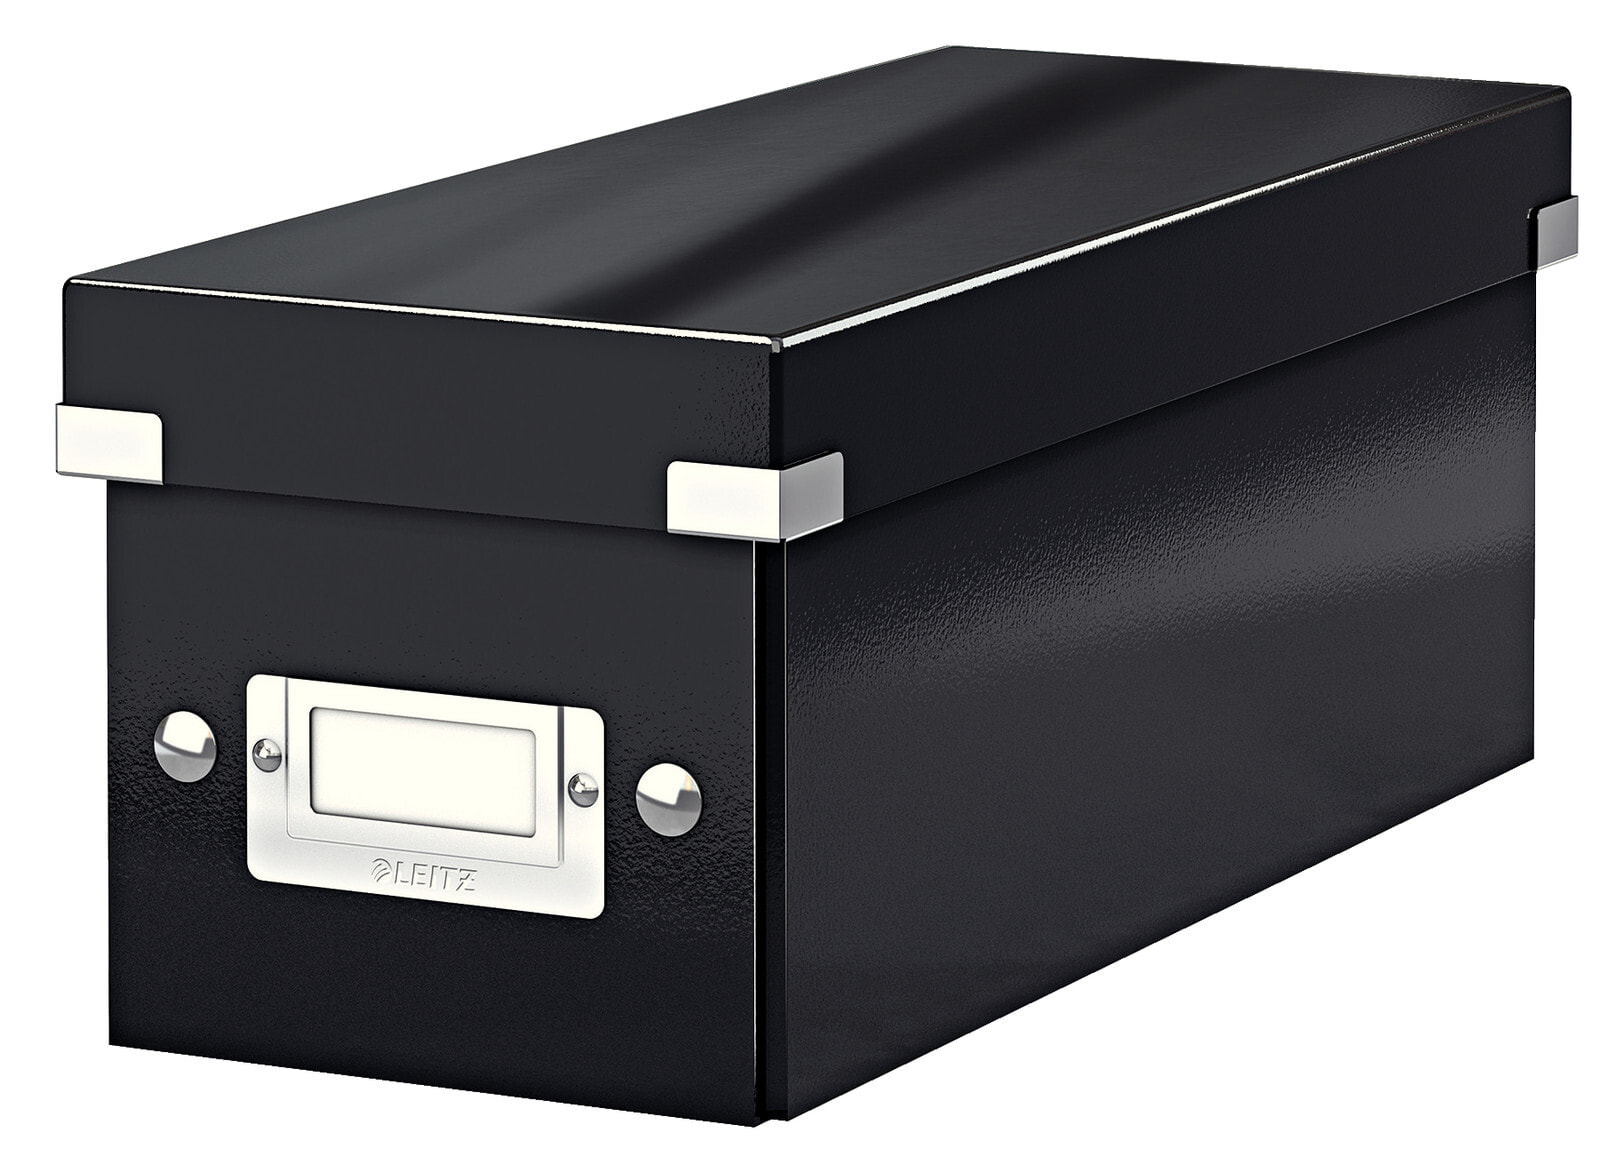 Leitz 60410095 коробка для хранения оптических дисков 160 диск (ов) Черный Картон